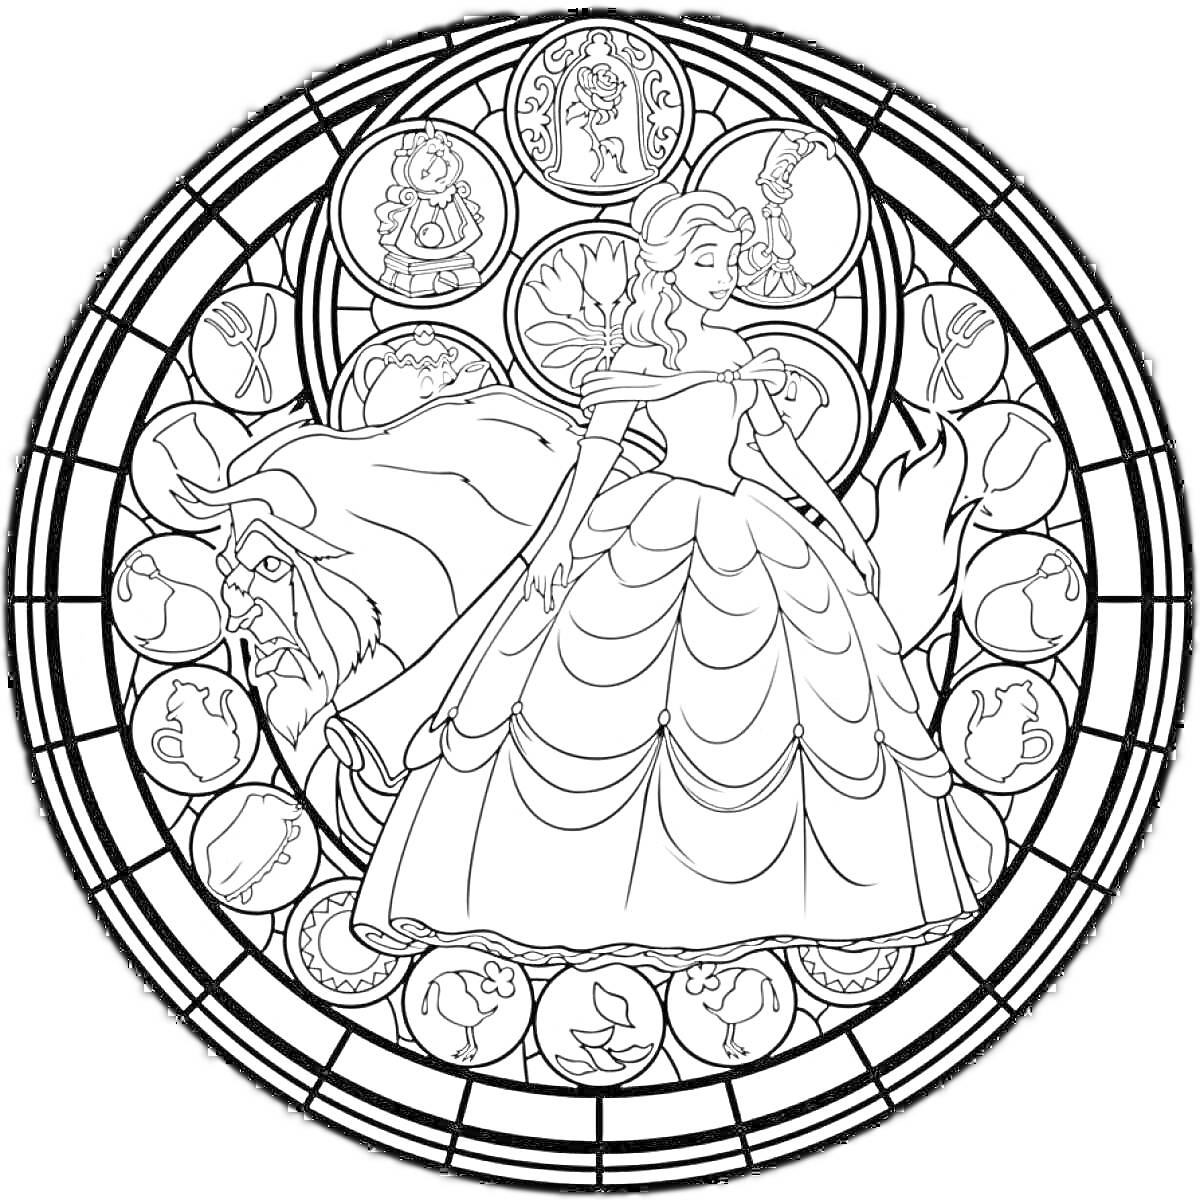 Раскраска Витраж с девушкой в платье и львом, окружённый кругами с изображениями персонажей и символами